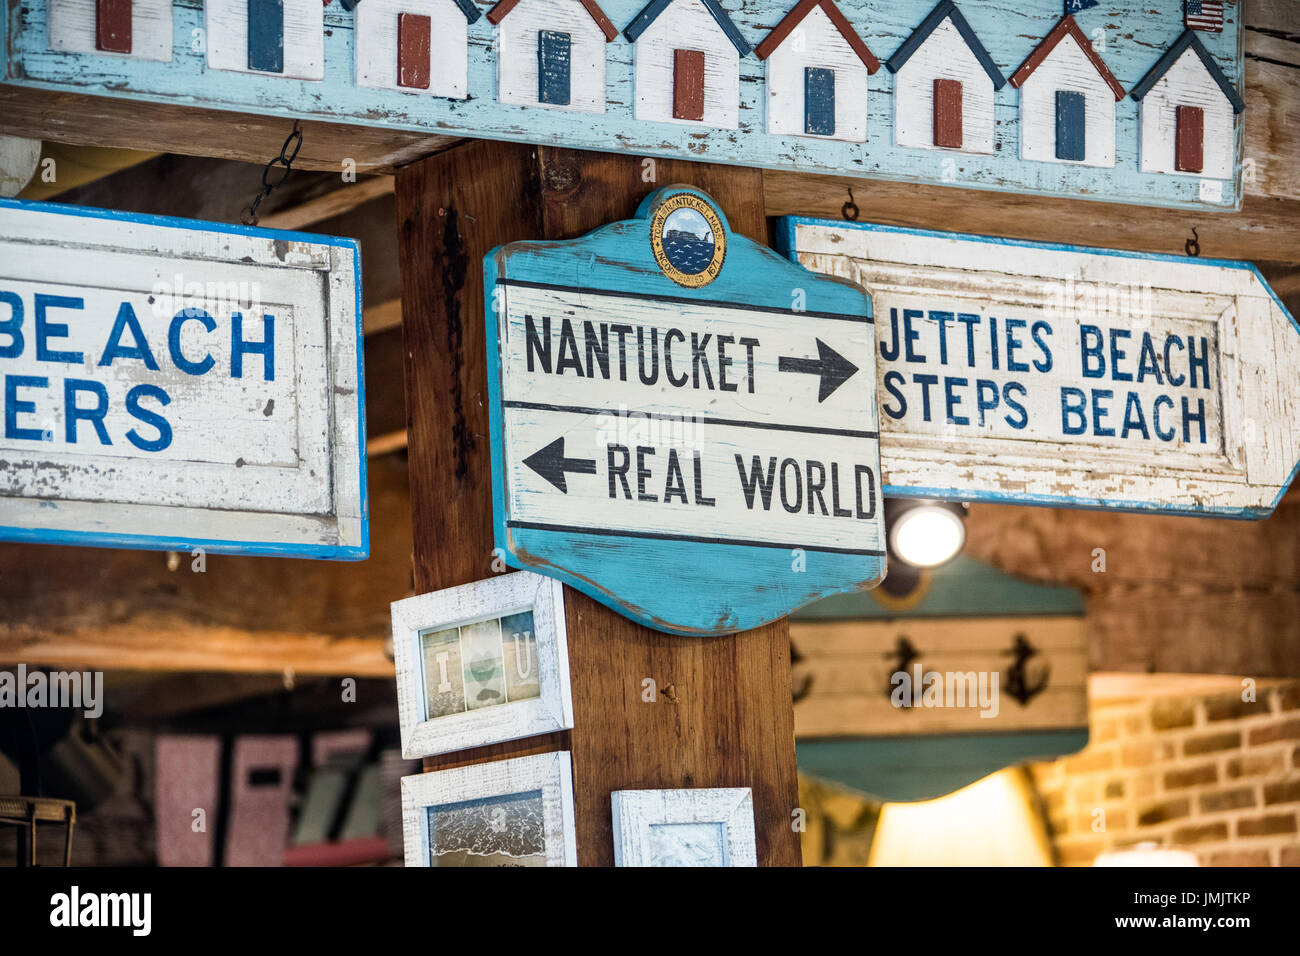 Tienda de souvenirs, Nantucket Island, Massachusetts, EE.UU. Foto de stock